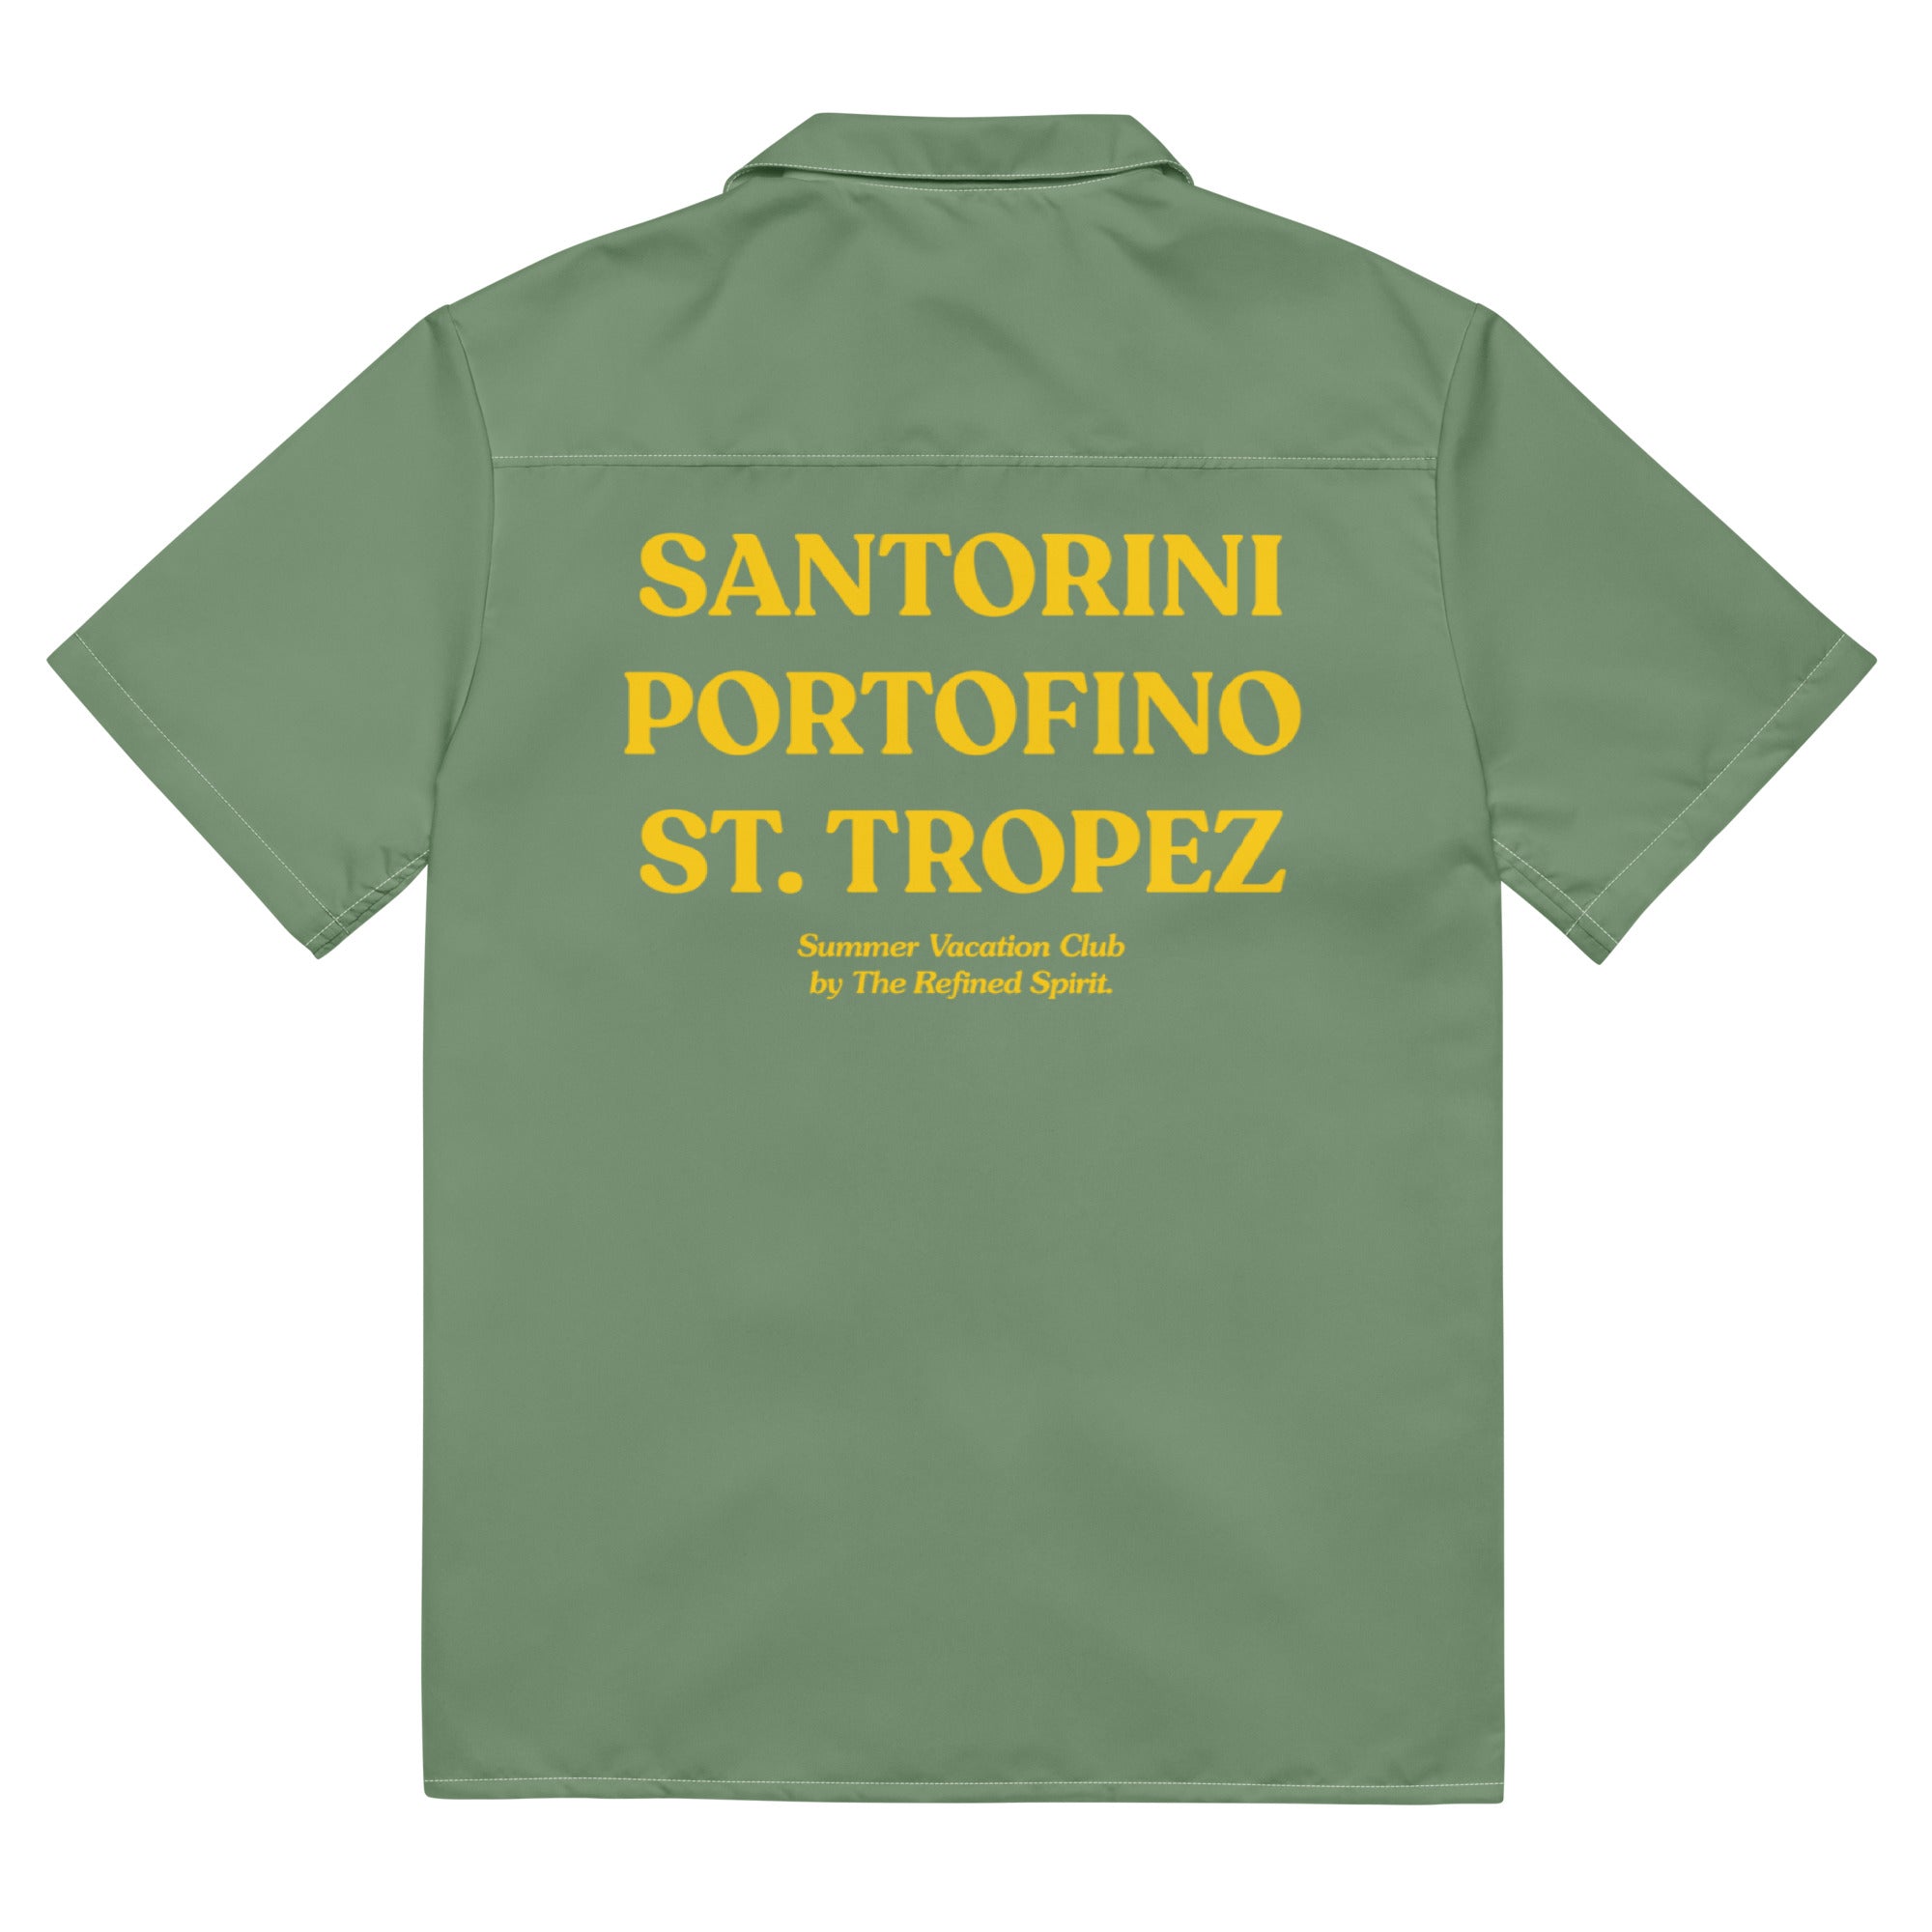 Santorini Portofino St. Tropez - Pool Shirt